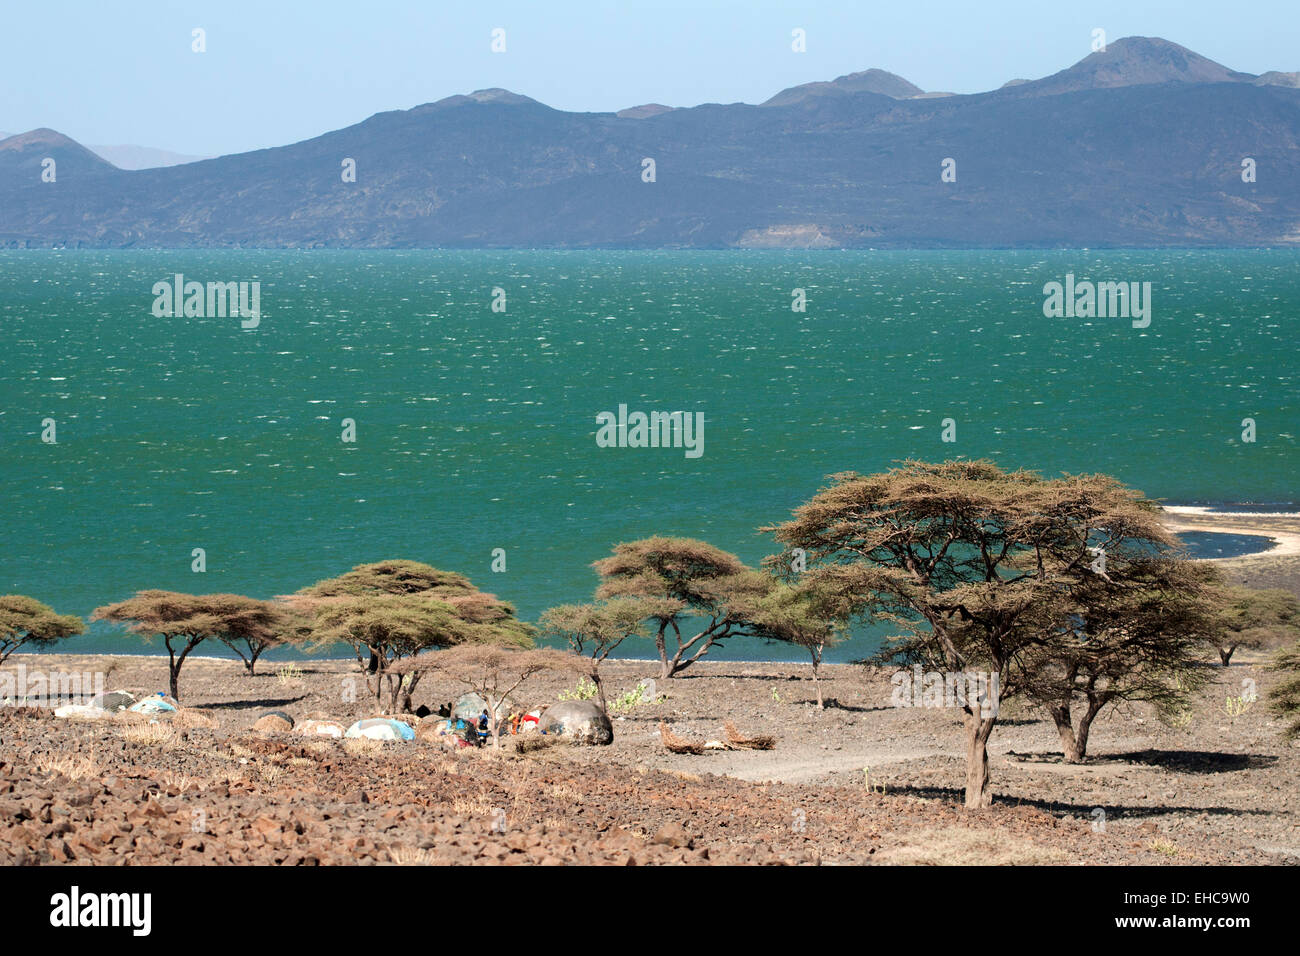 Un village à proximité du lac Turkana Turkana, eaux vertes Loiyangalani salon, Kenya Banque D'Images